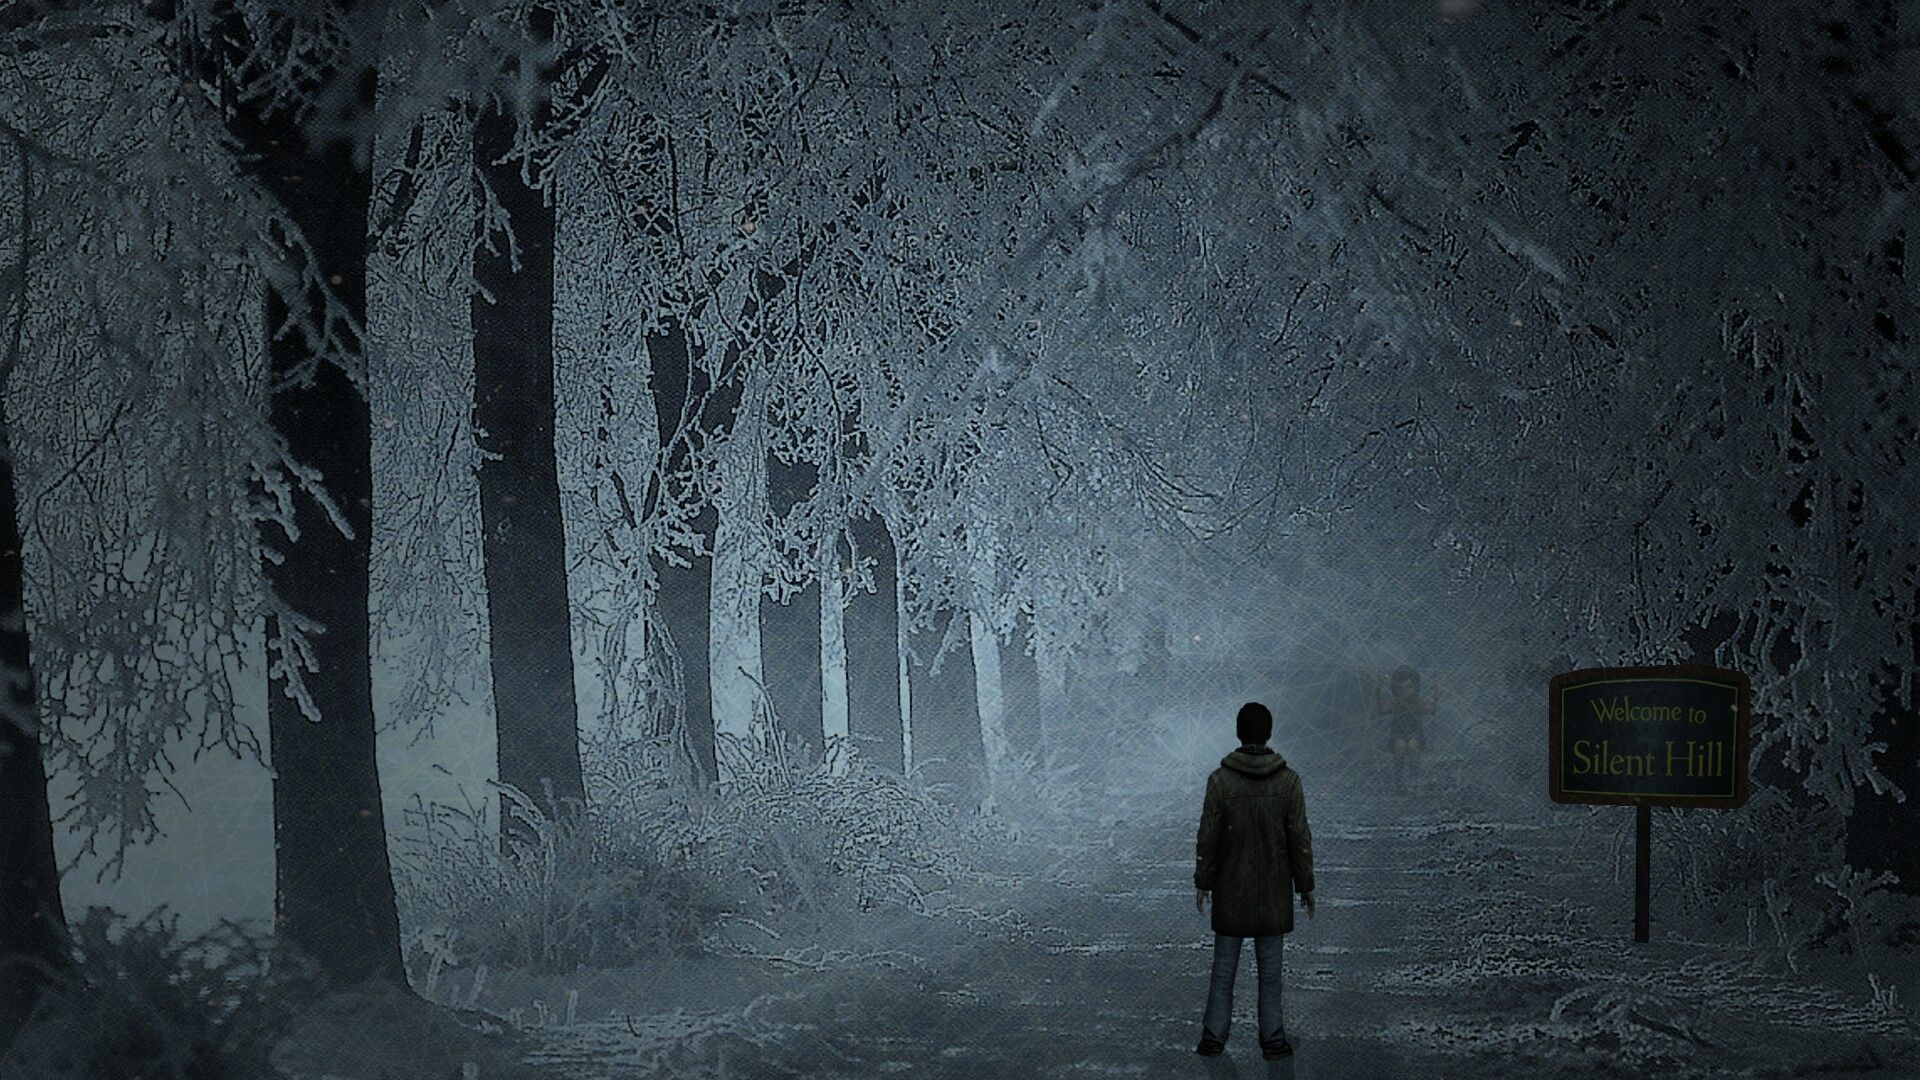  Silent Hill Downpour Hintergrundbild 1920x1080. Silent Hill: Shattered Memories Wallpaper. Silent hill, Konami, Silent hill series